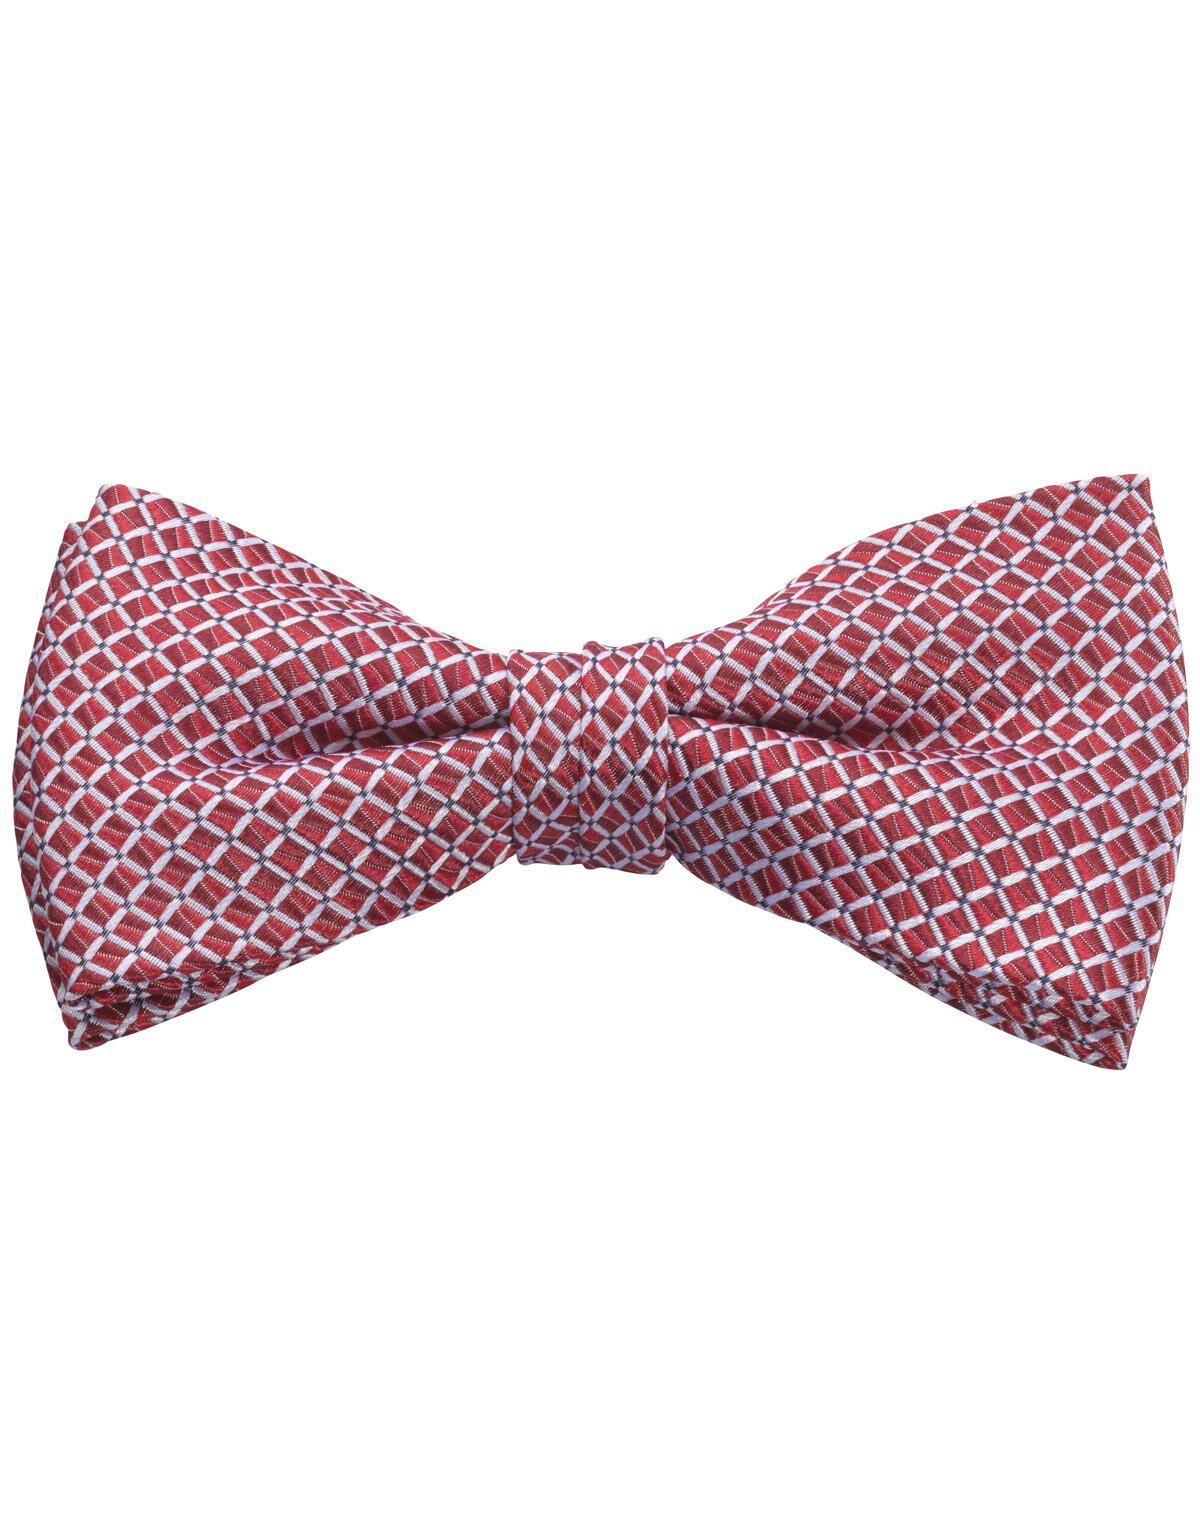 Купить красные галстуки мужские в интернет магазине kormstroytorg.ru | Страница 10